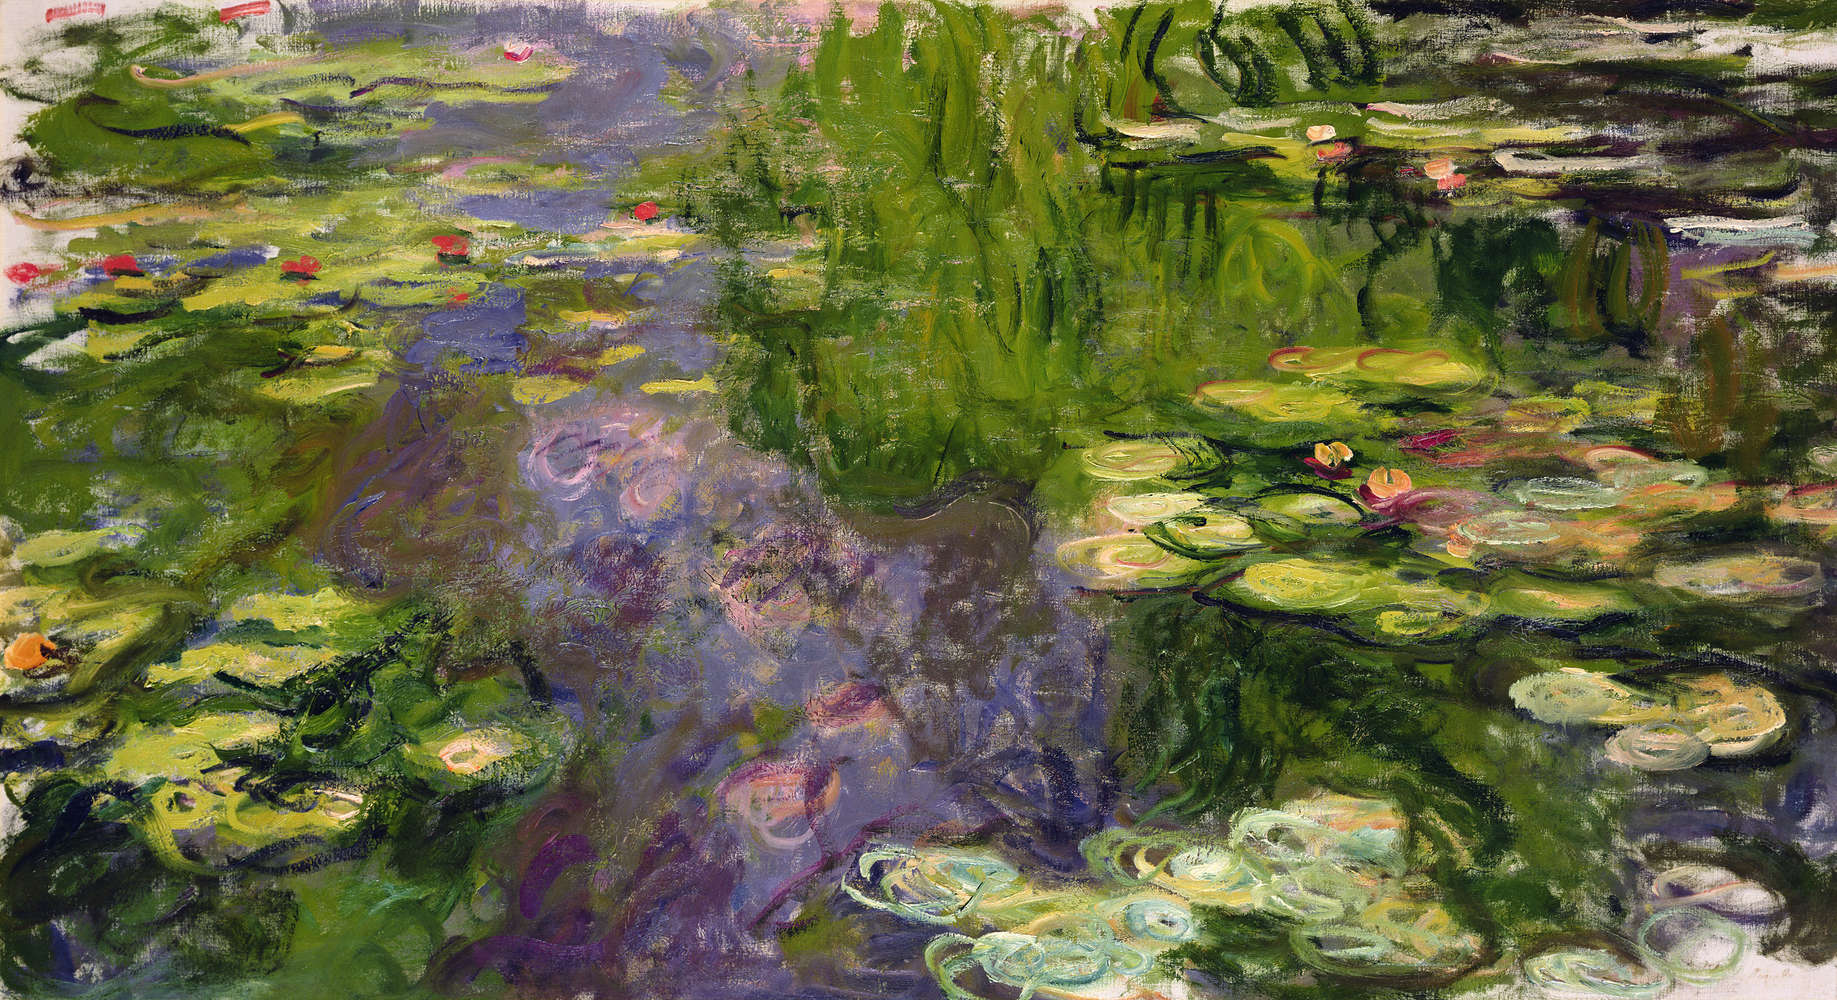             Waterlelies" muurschildering van Claude Monet
        